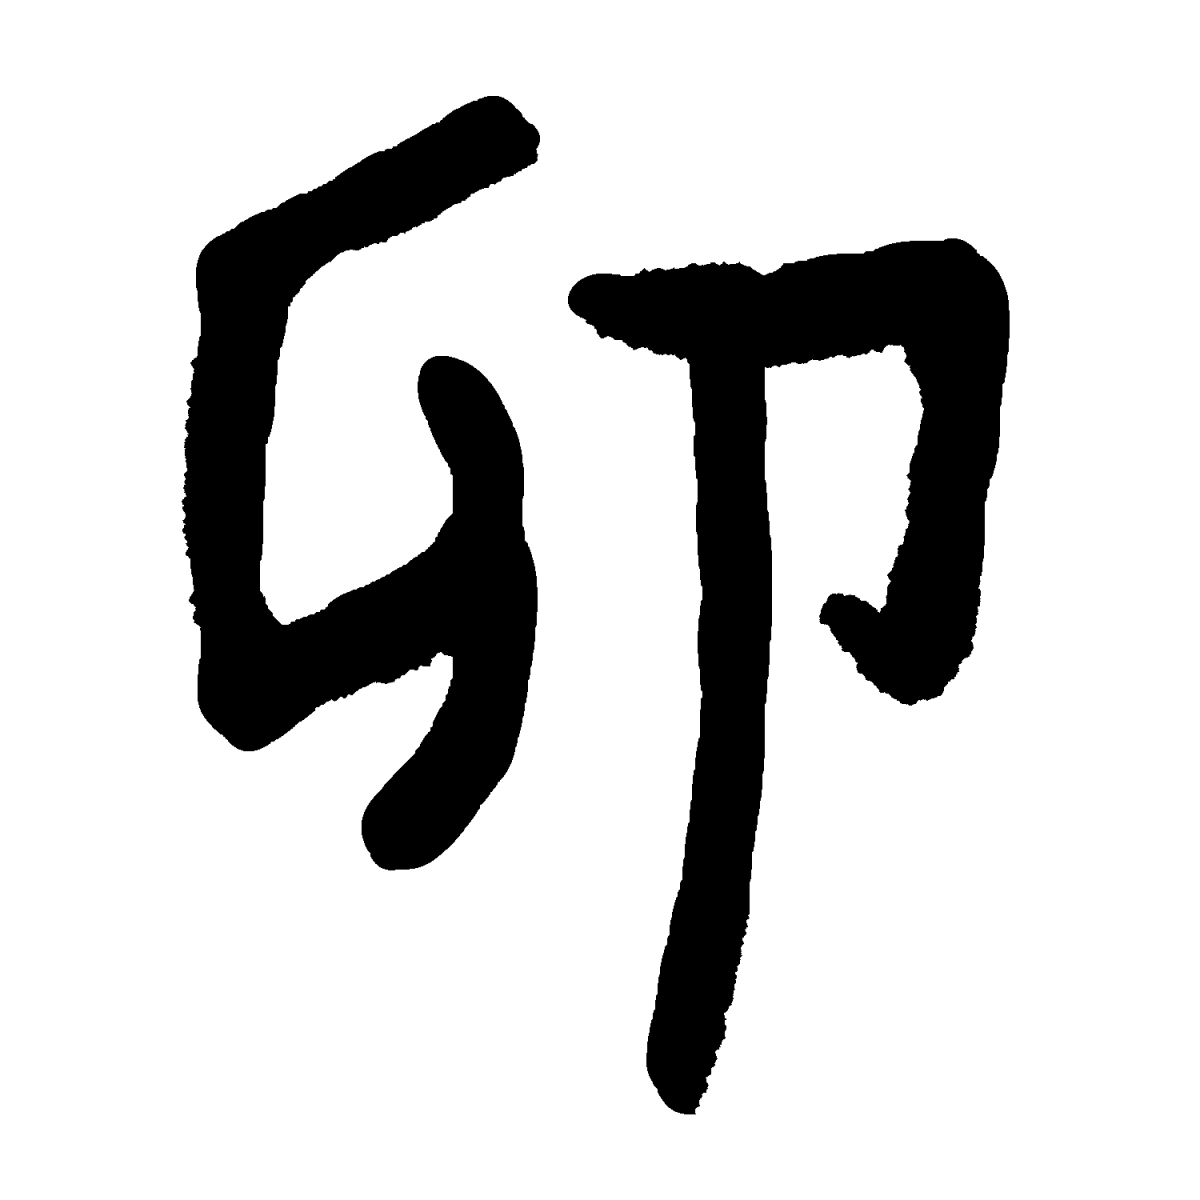 干支「卯」の漢字のイラスト / Chinese Zodiac Rabbit Illustration